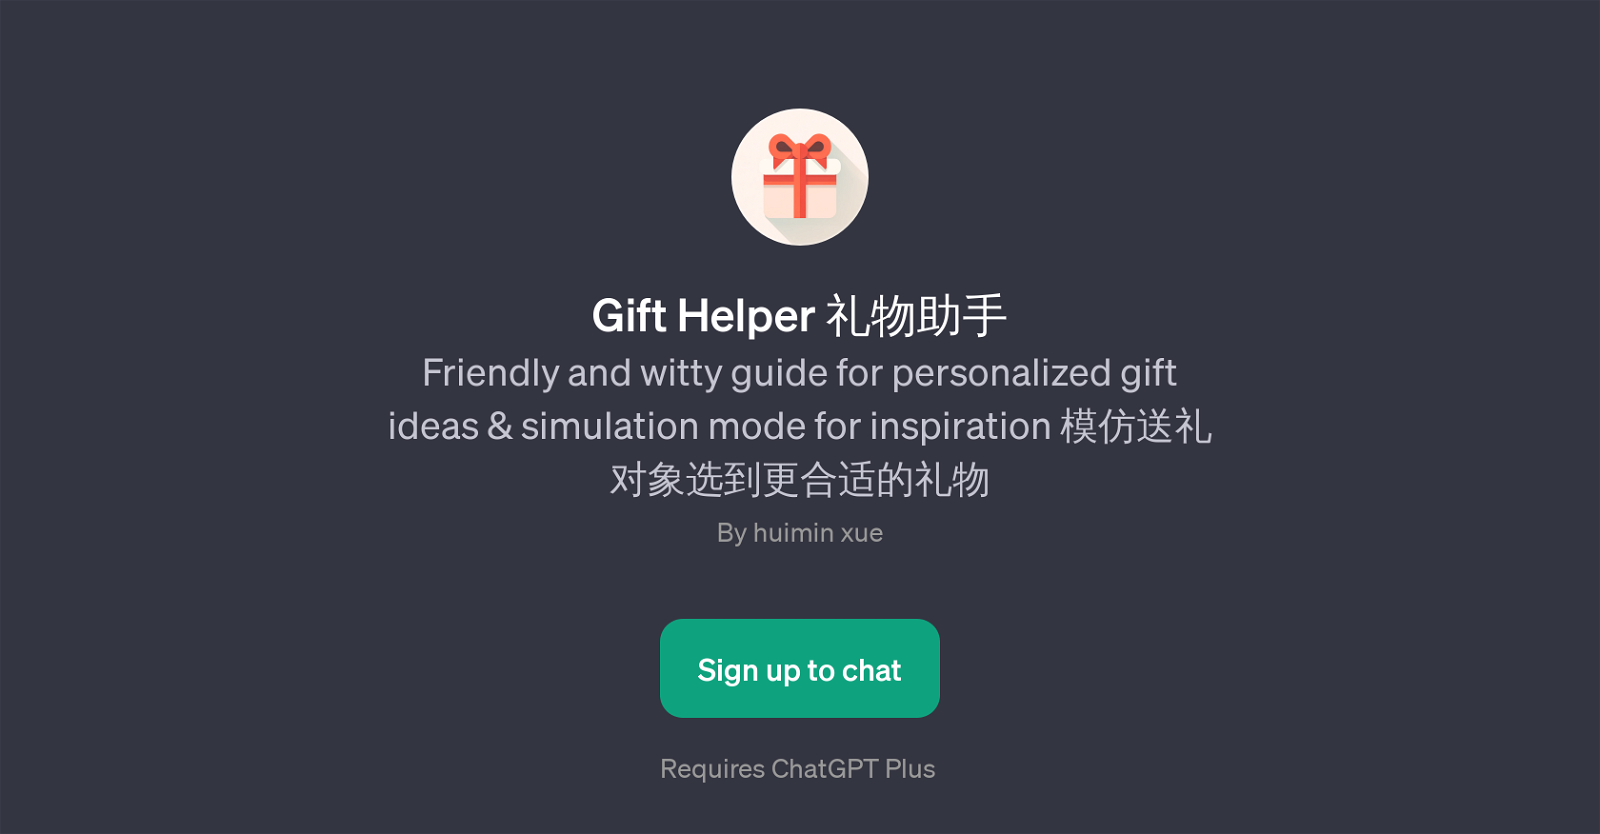 Gift Helper website